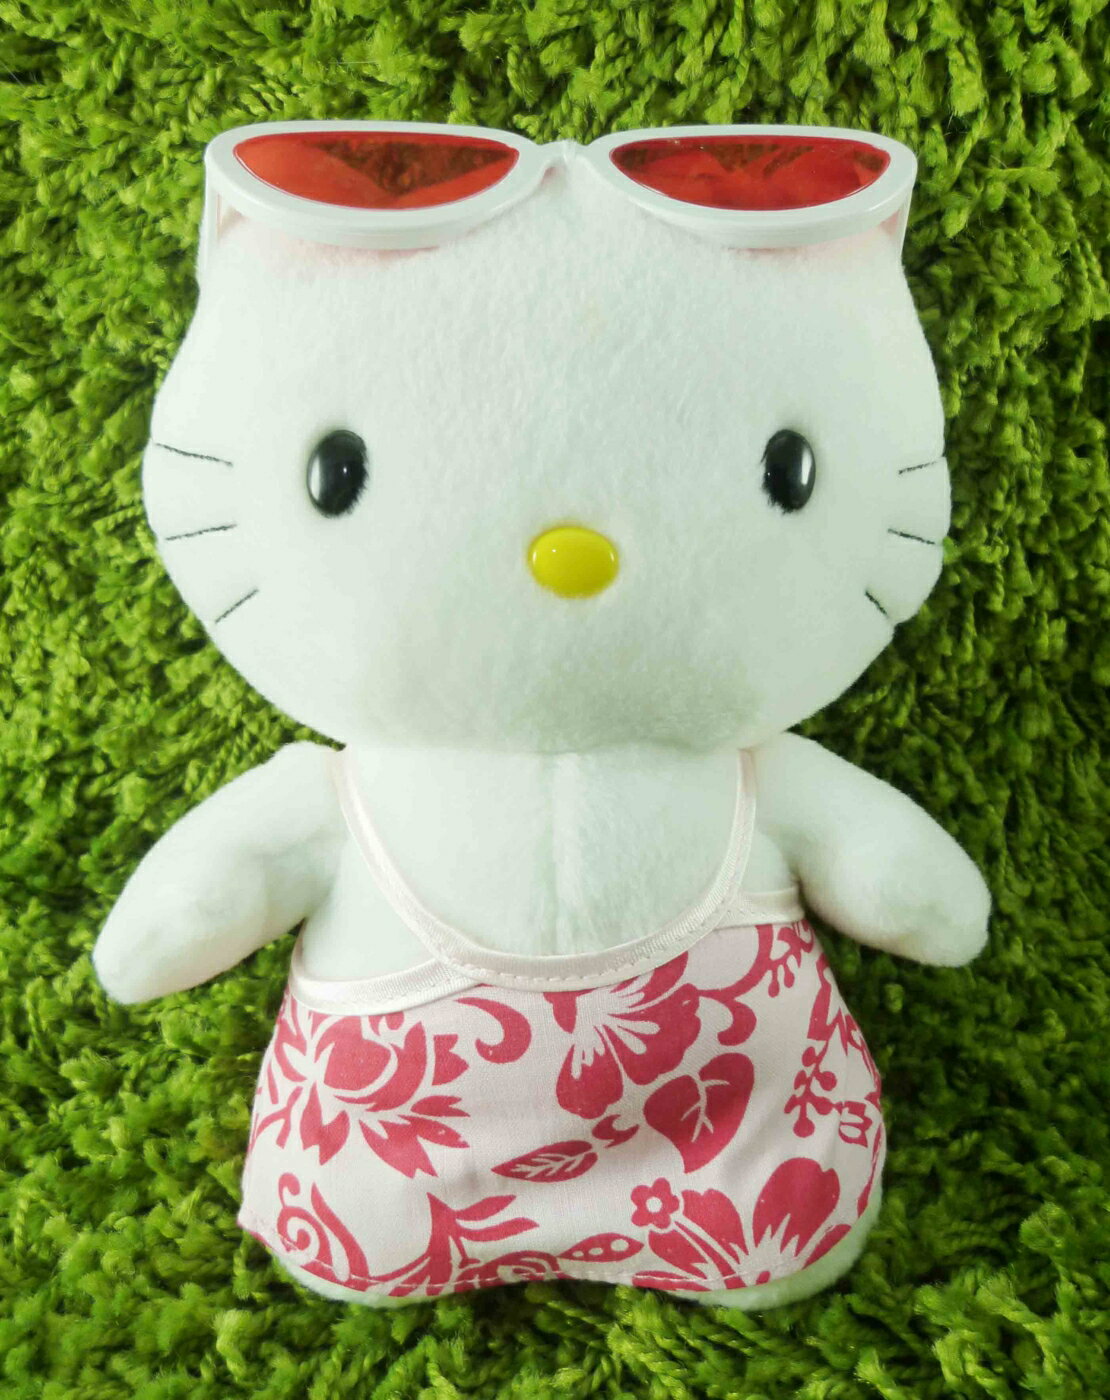 【震撼精品百貨】Hello Kitty 凱蒂貓 KITTY絨毛娃娃-夏威夷裝扮-女 震撼日式精品百貨